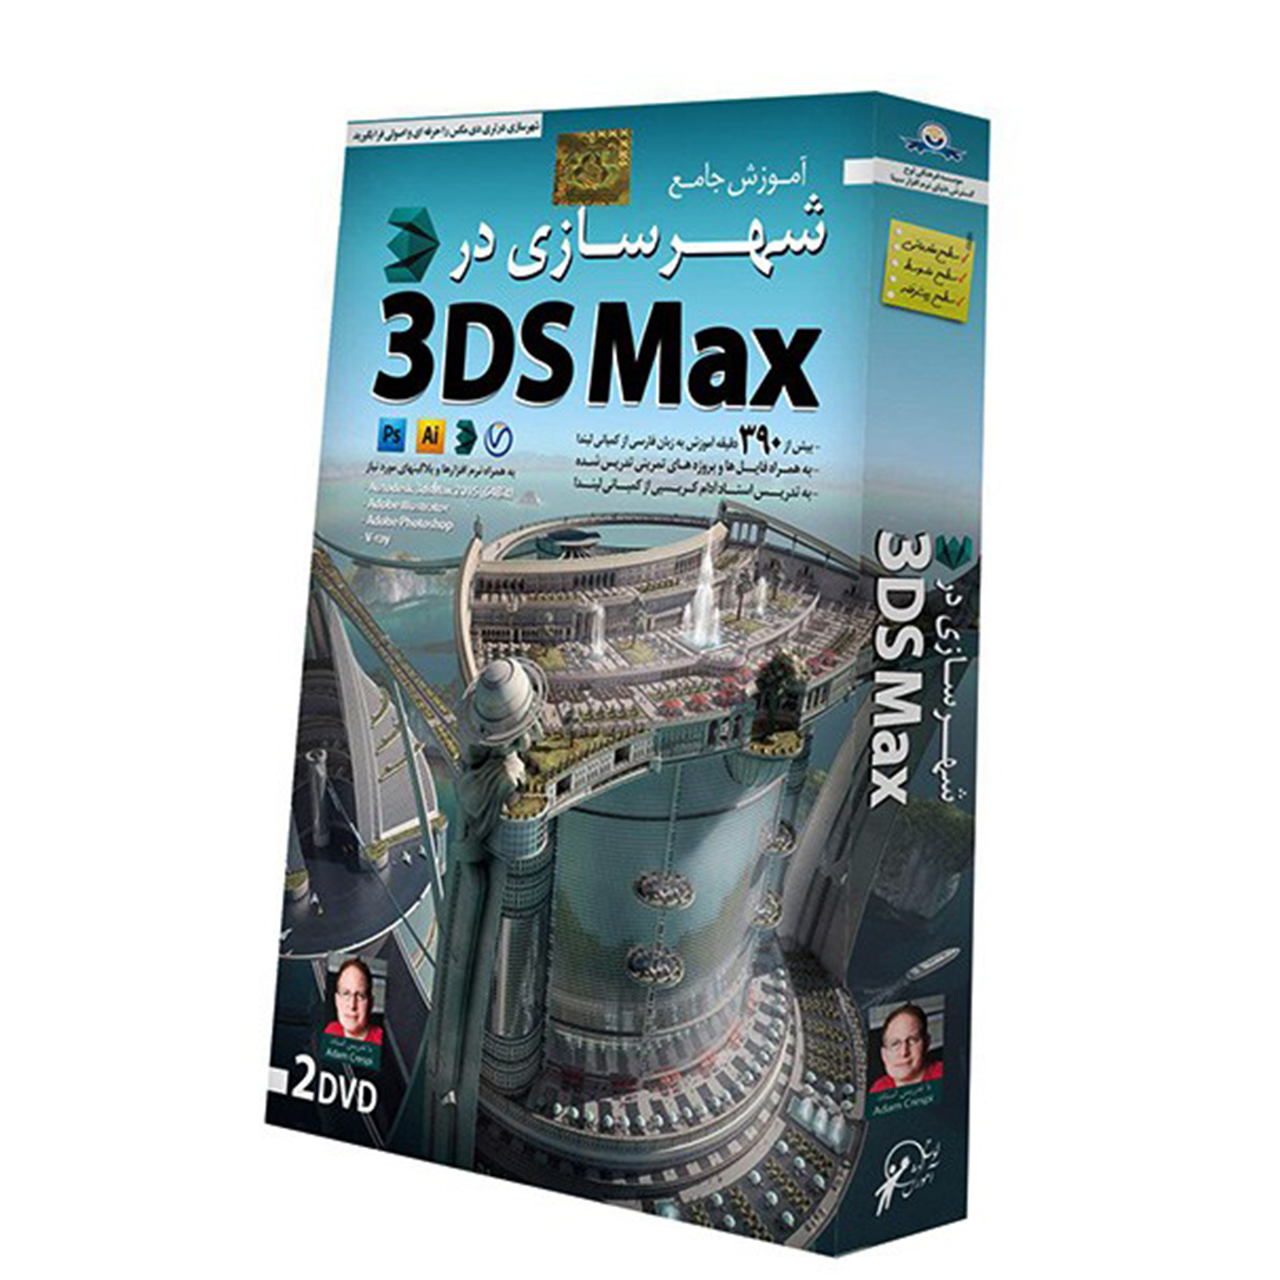 آموزش تصویری شهرسازی در 3DS Max نشر دنیای نرم افزار سینا